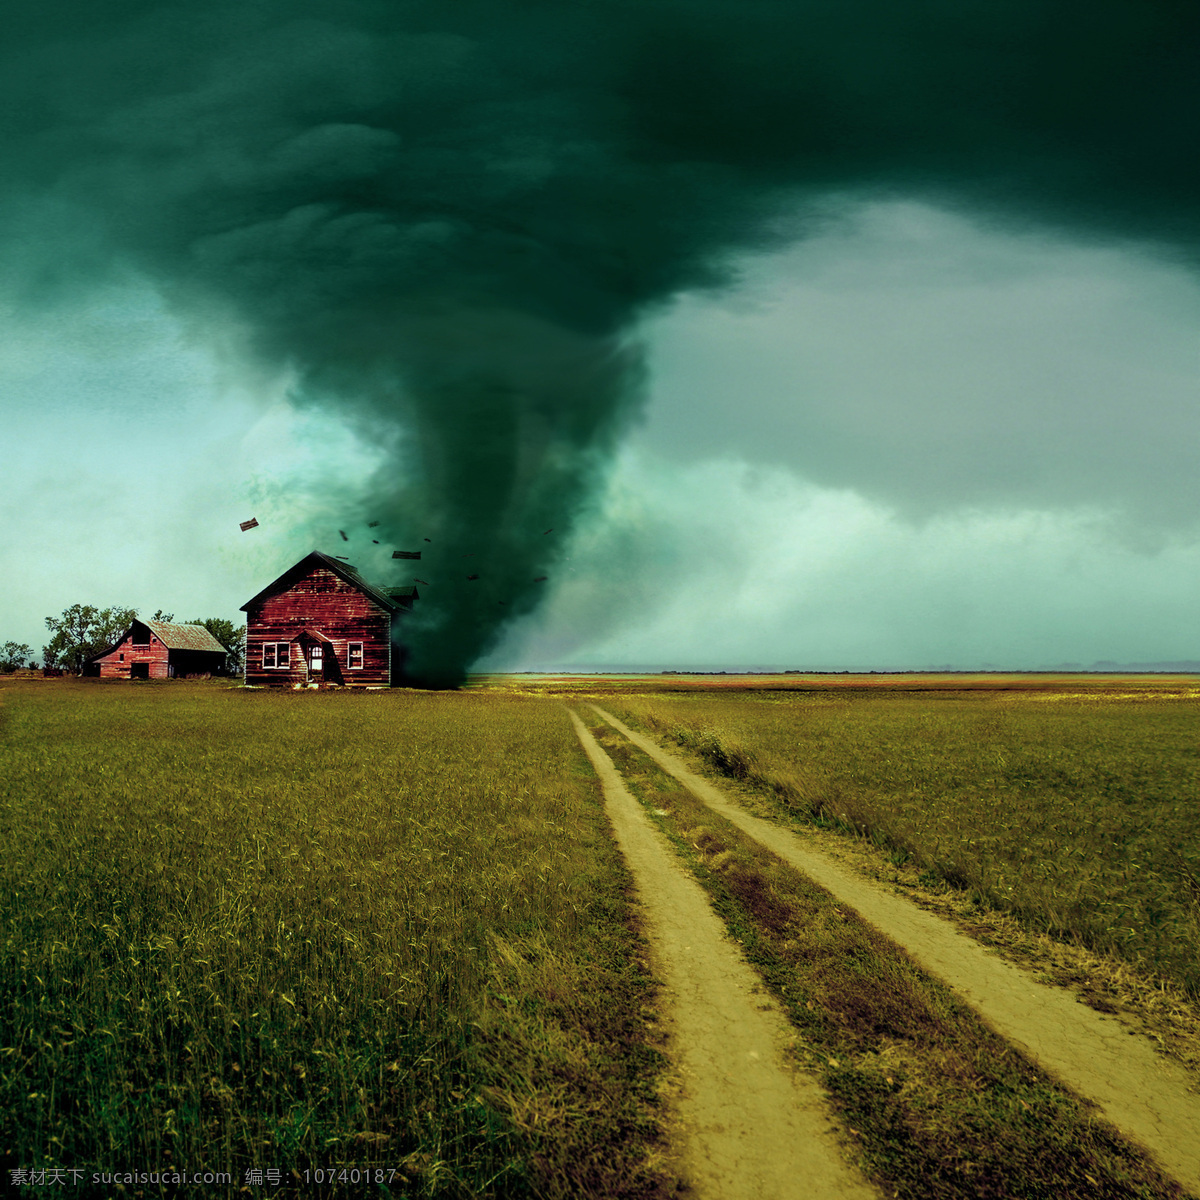 草原 上 龙卷风 草地 马路 公路 房子 飓风 暴风 自然灾害 环境破坏 草原图片 风景图片